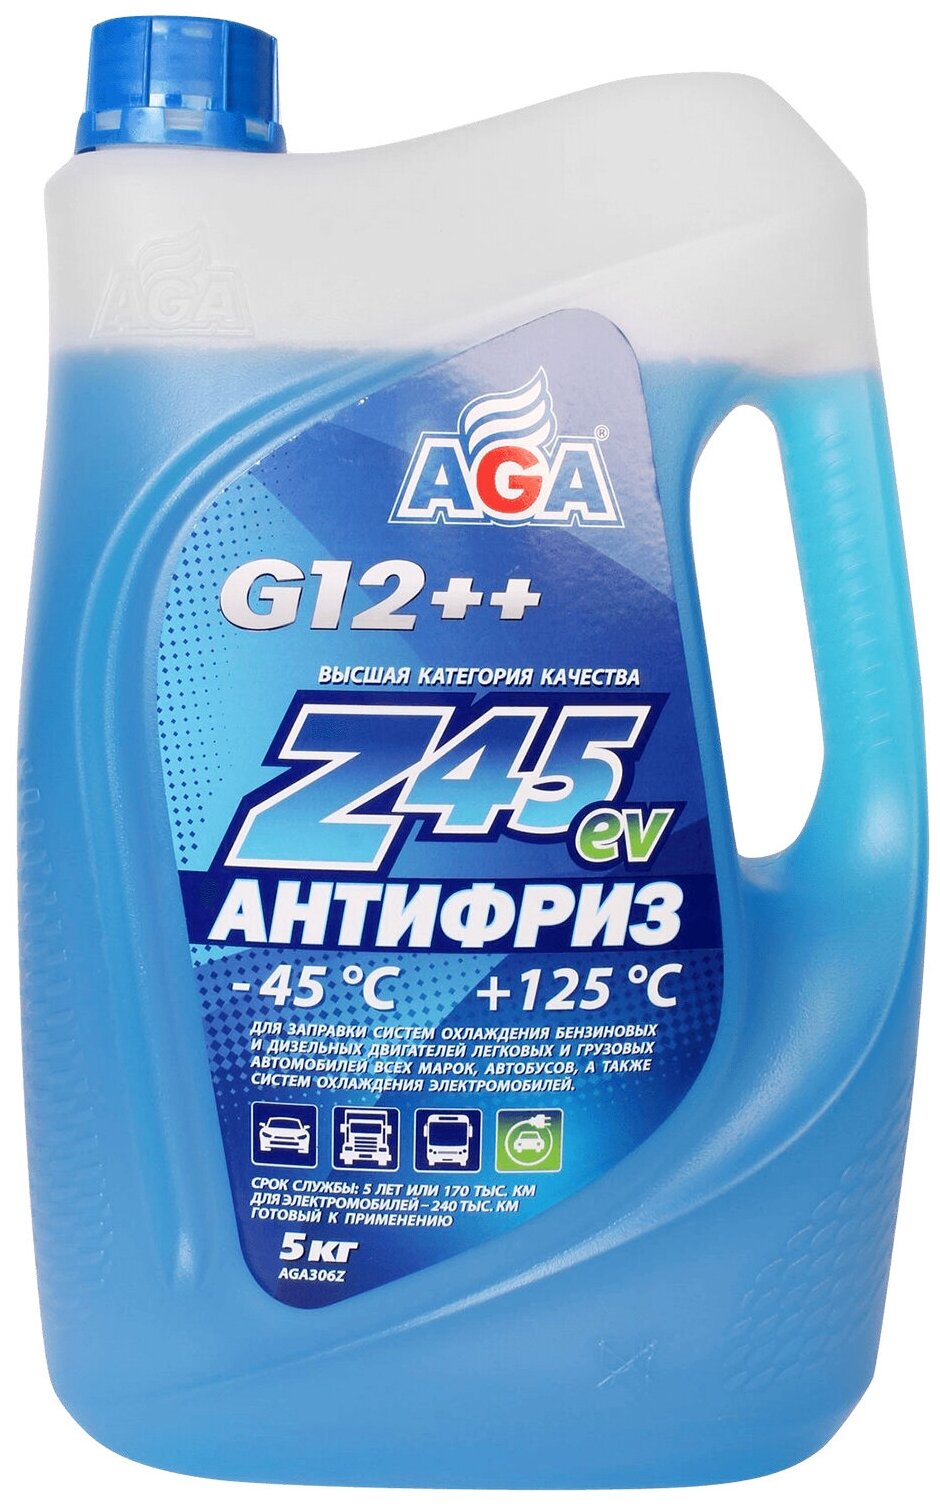 AGA AGA306Z Антифриз готовый к применению синий -45С 5 кг G-12++